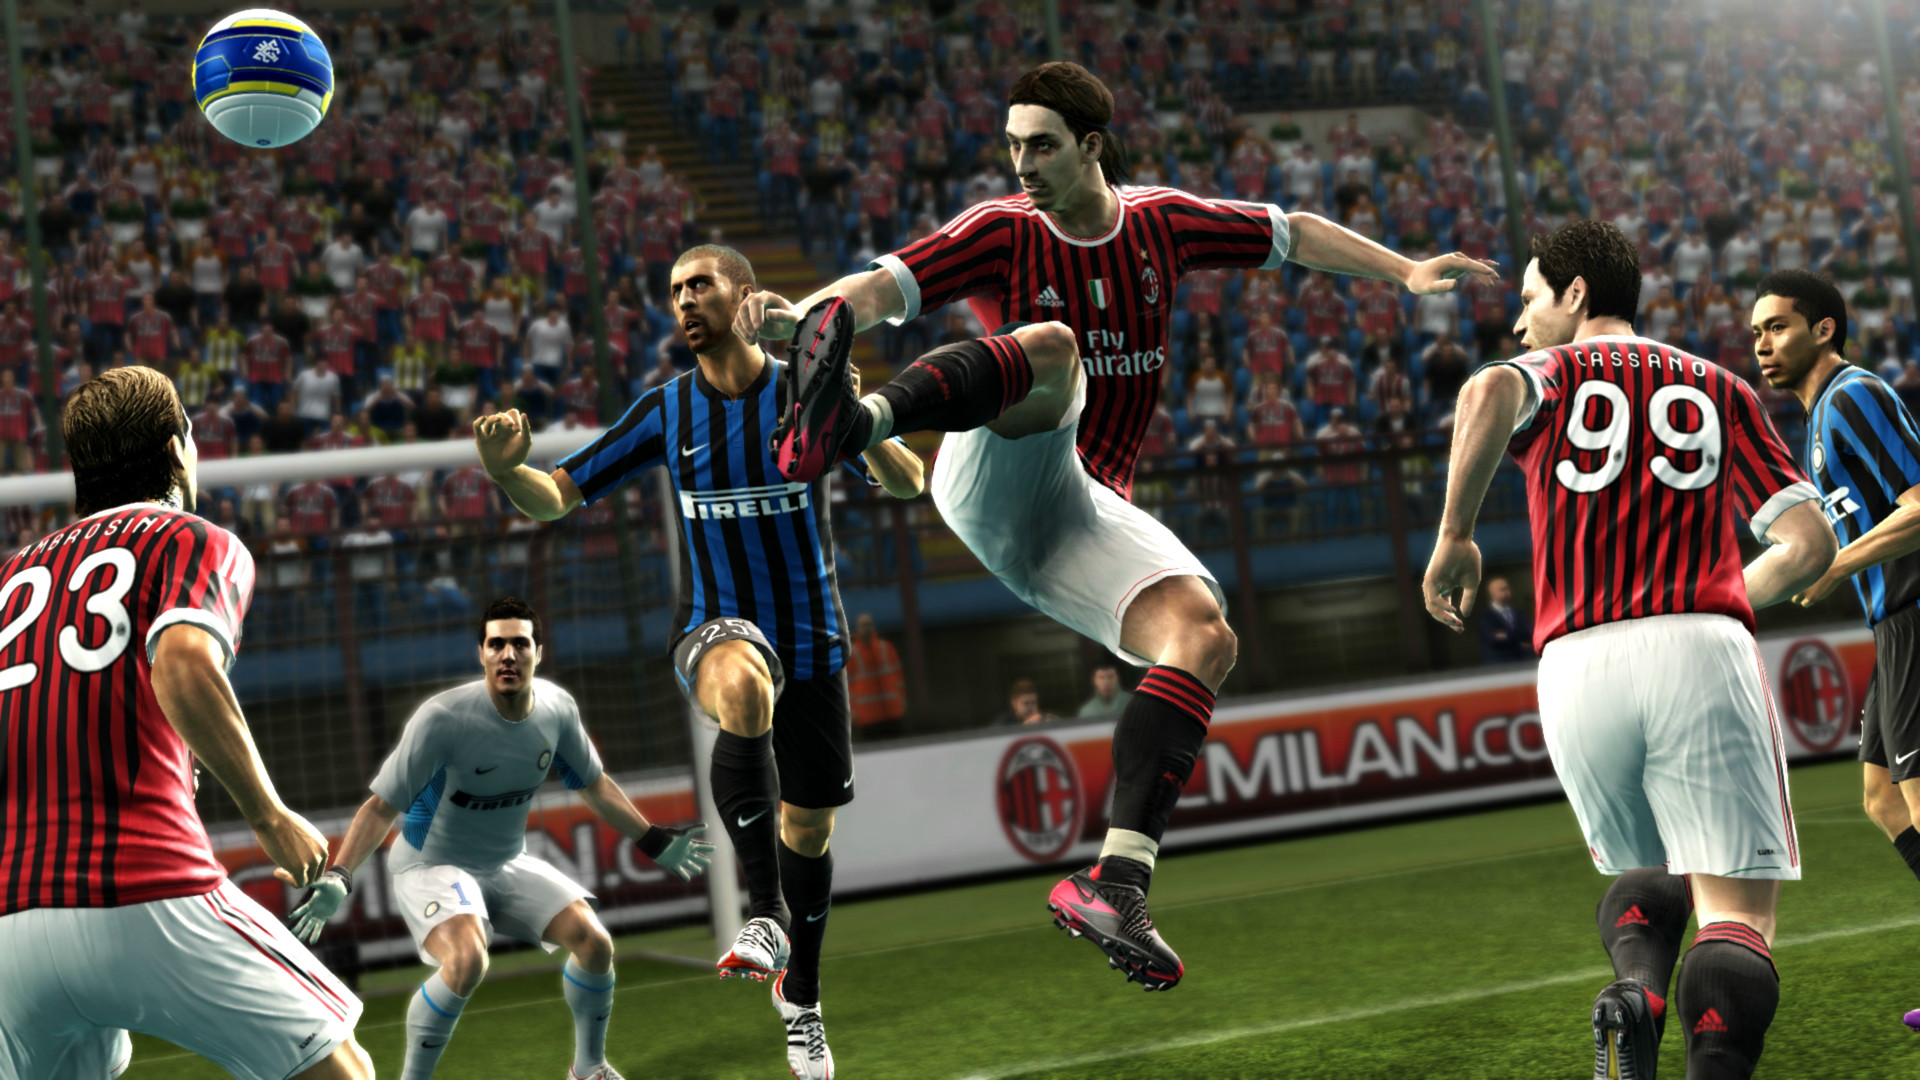 PES Pro Evolution Soccer 2013 Download Free